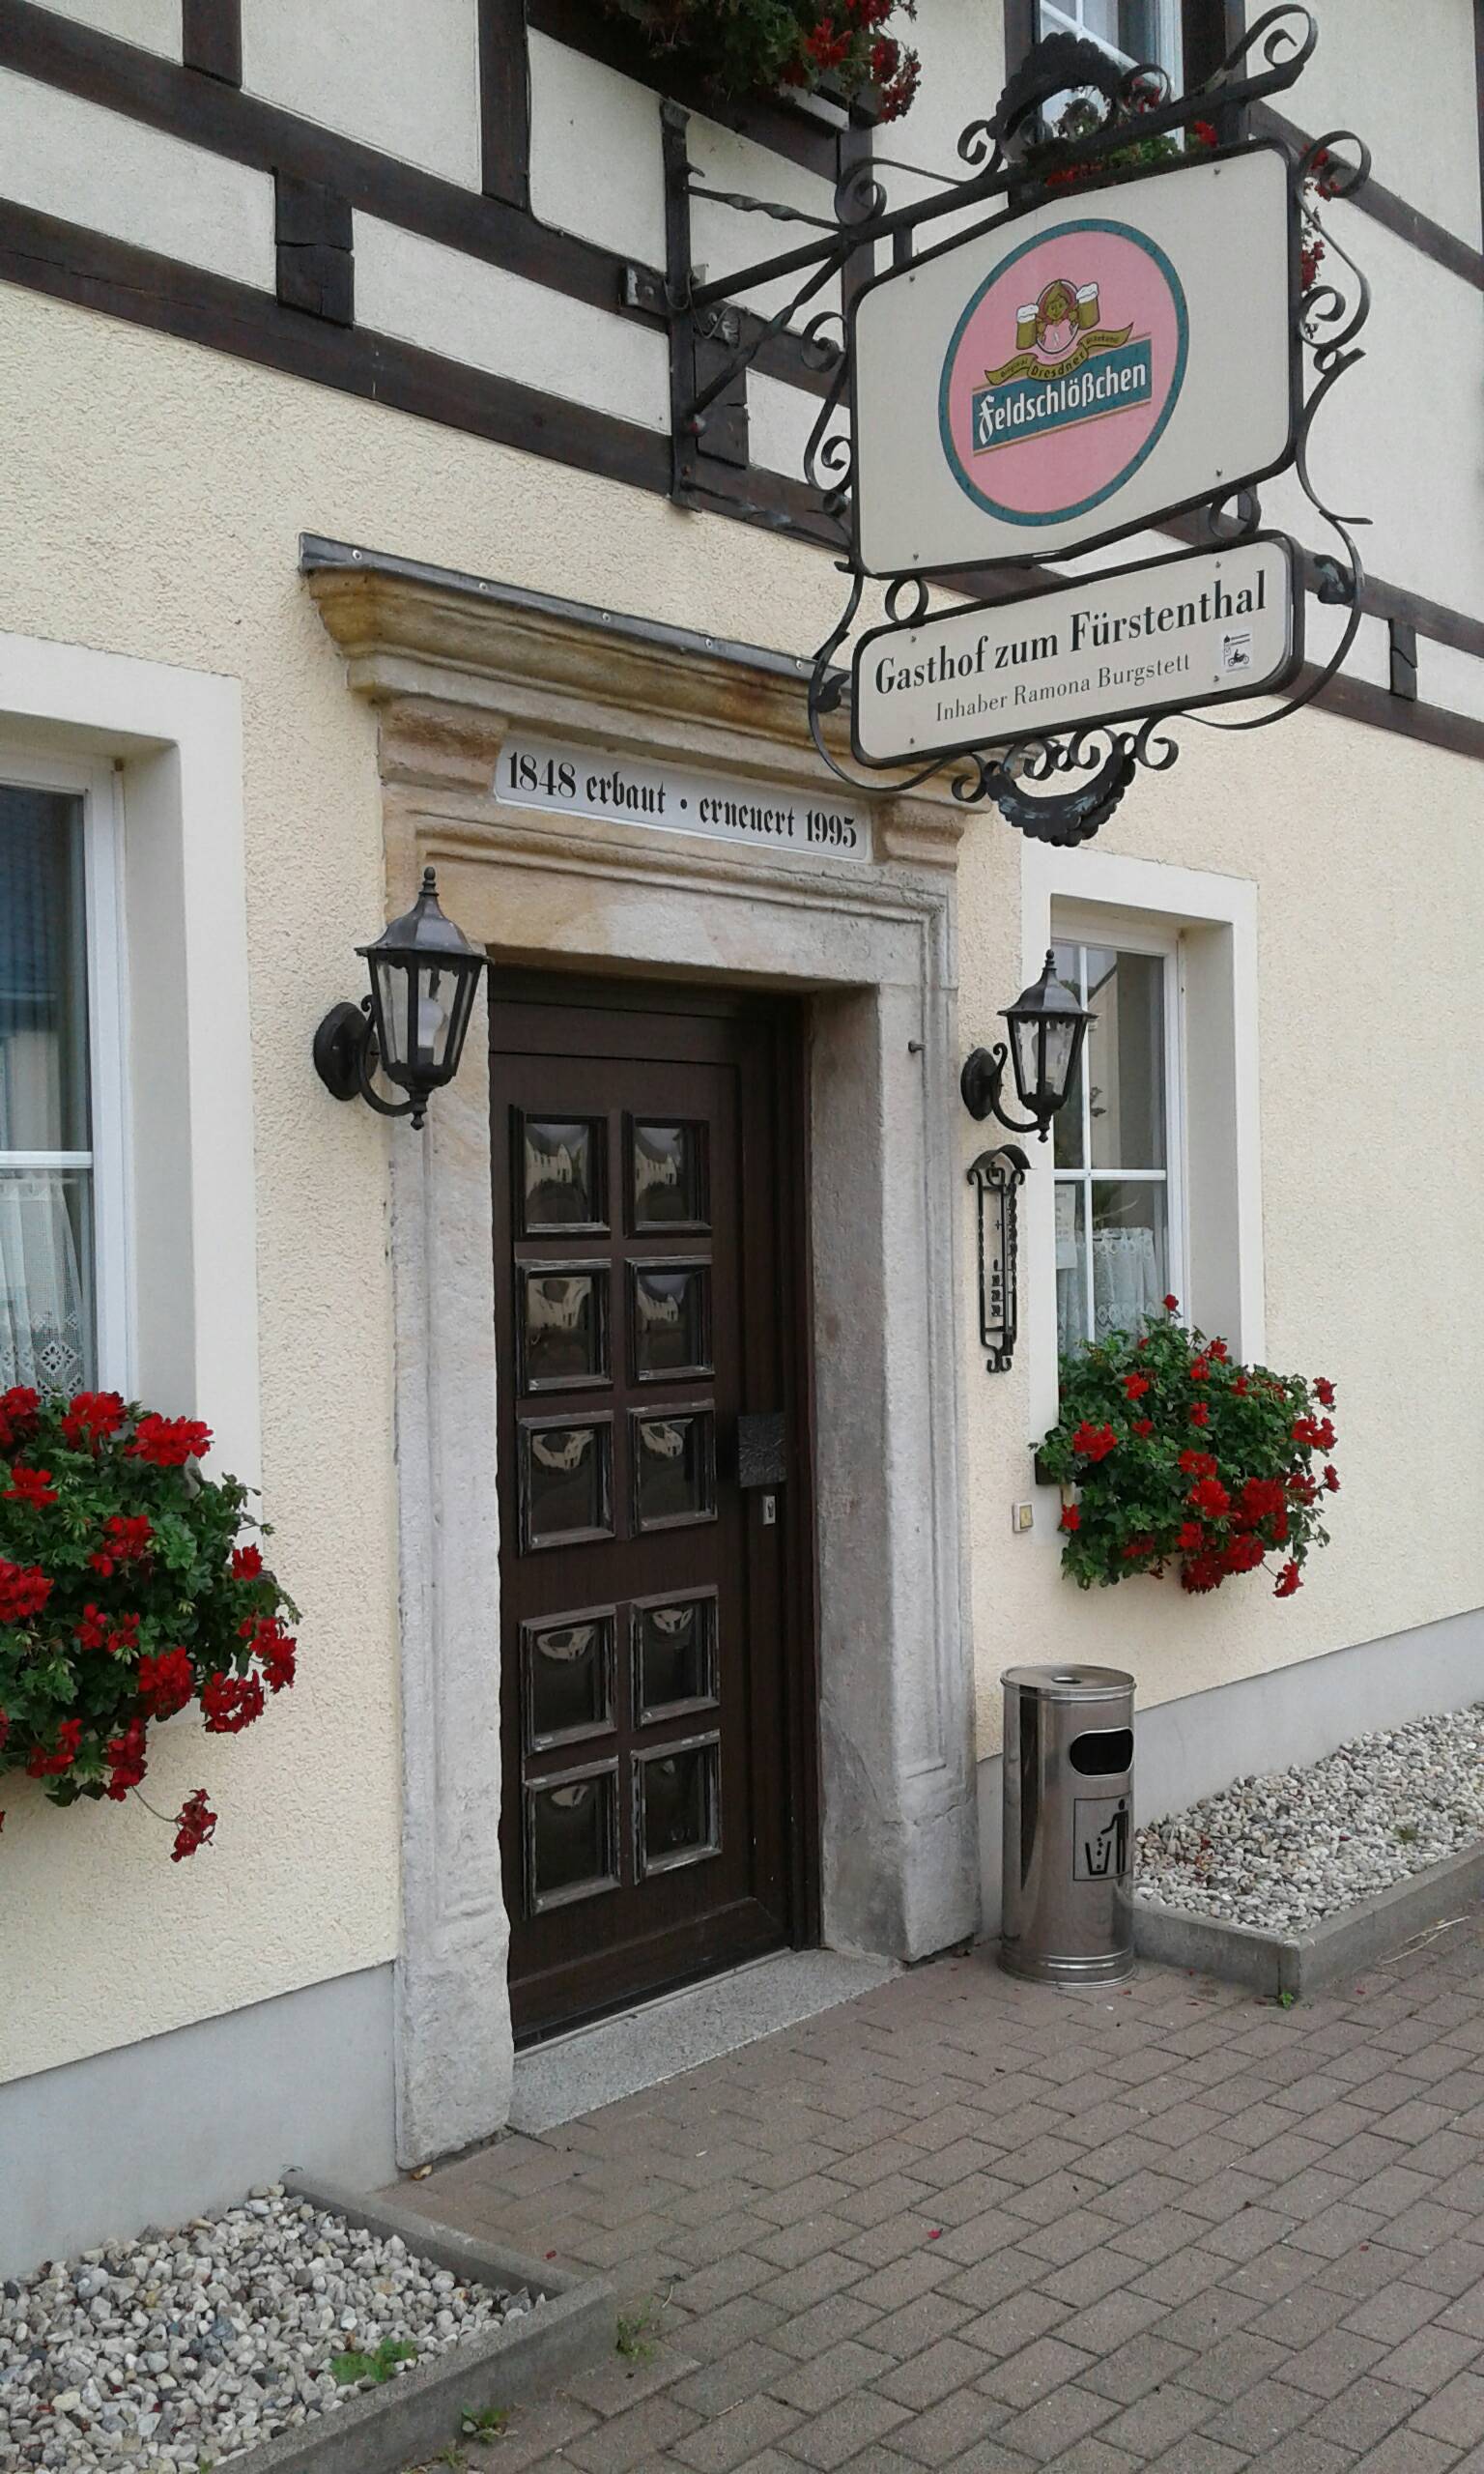 Bild 25 Gasthof zum Fürstenthal in Frauenstein